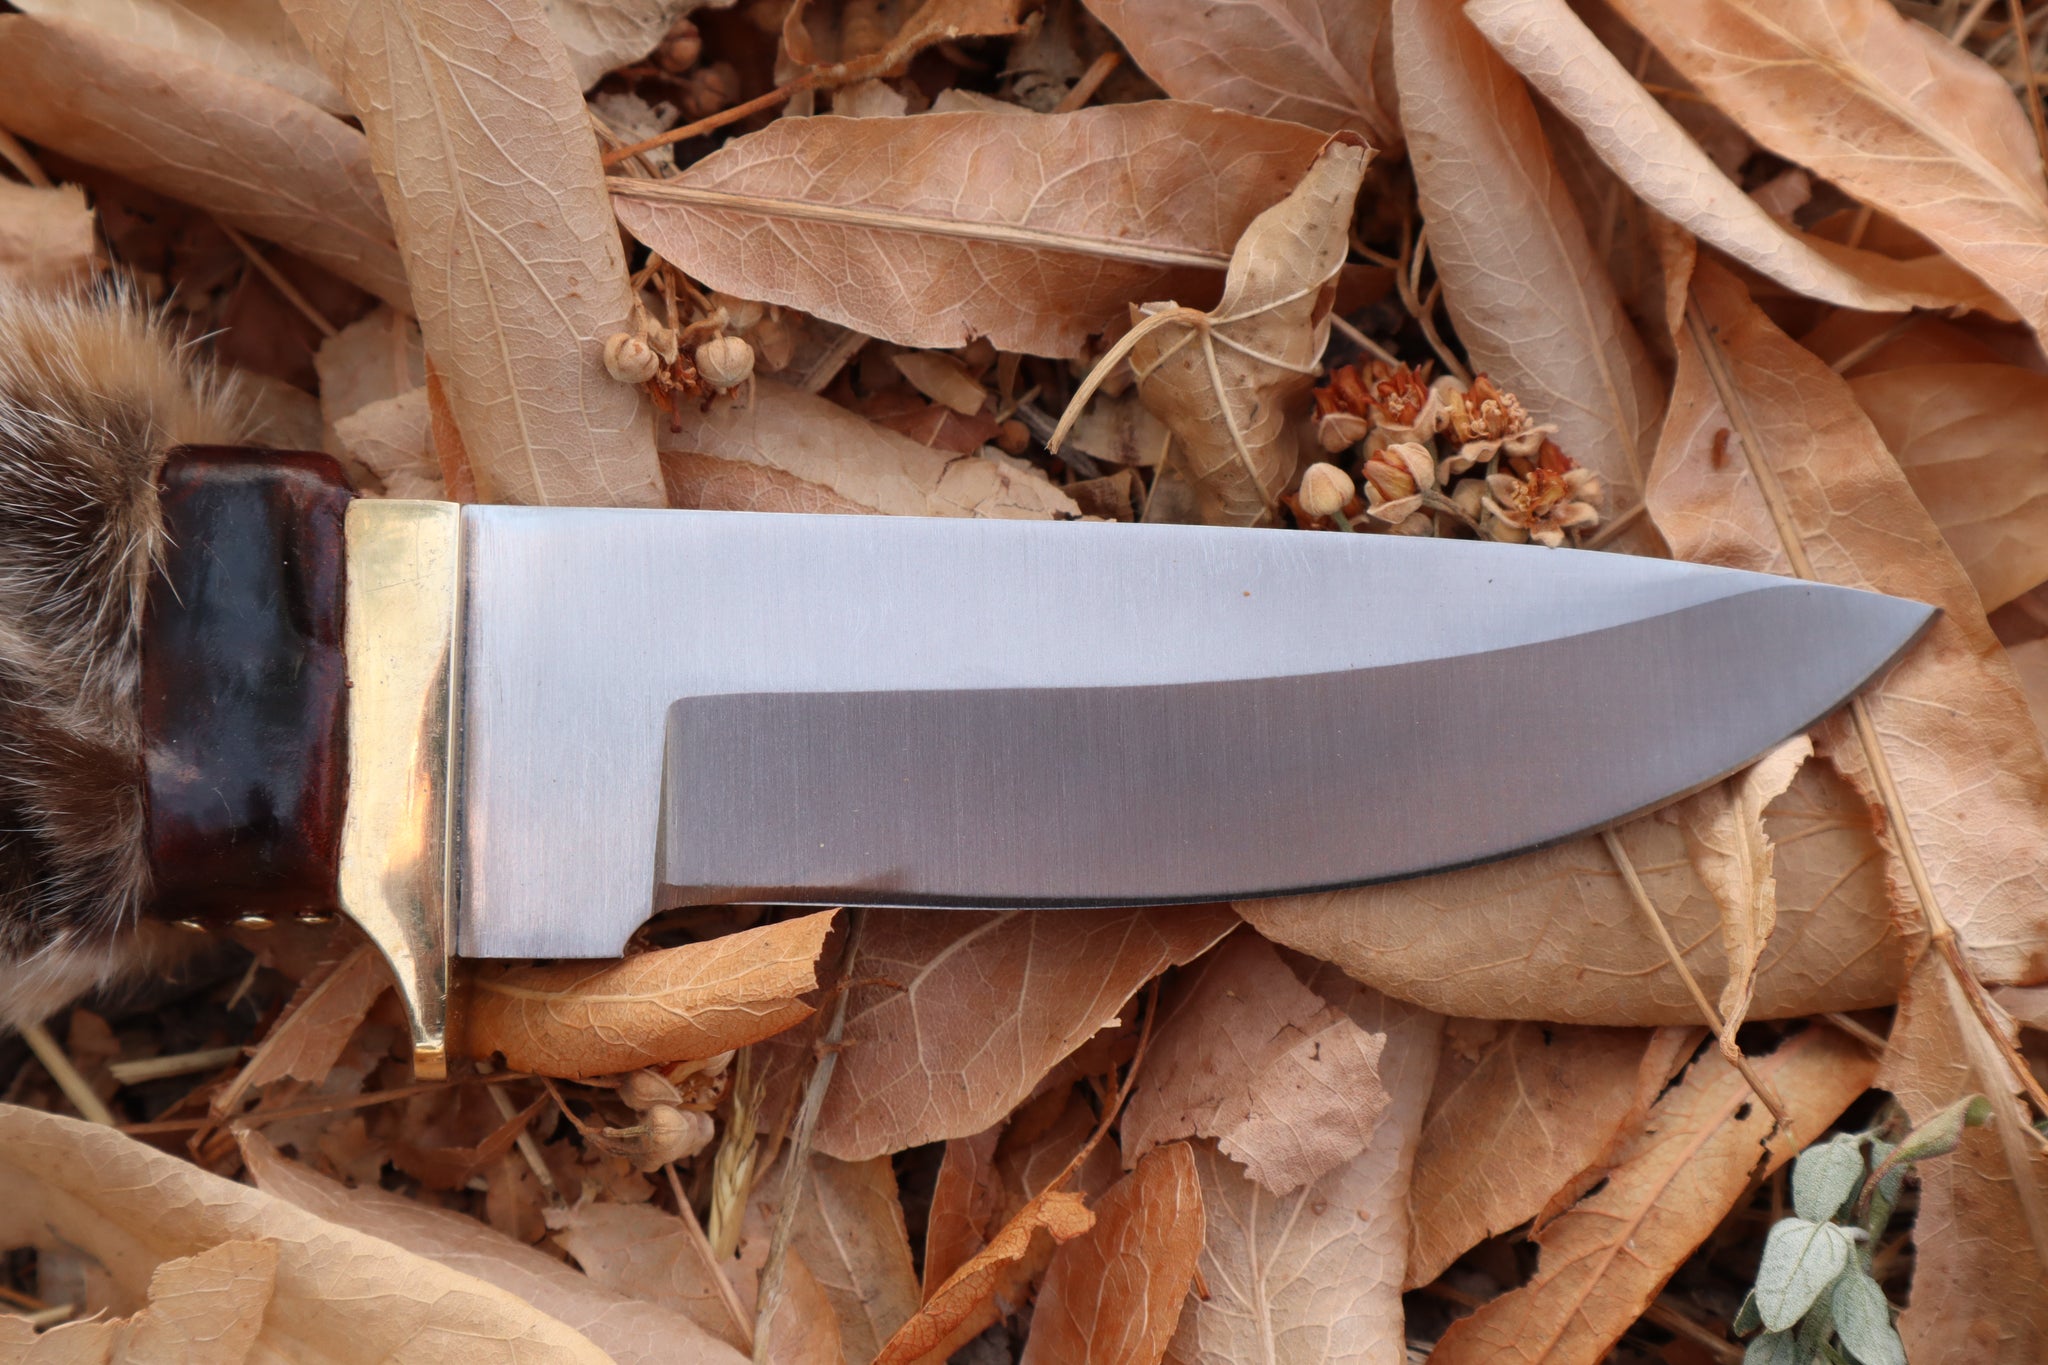 Bobcat Paw Knife